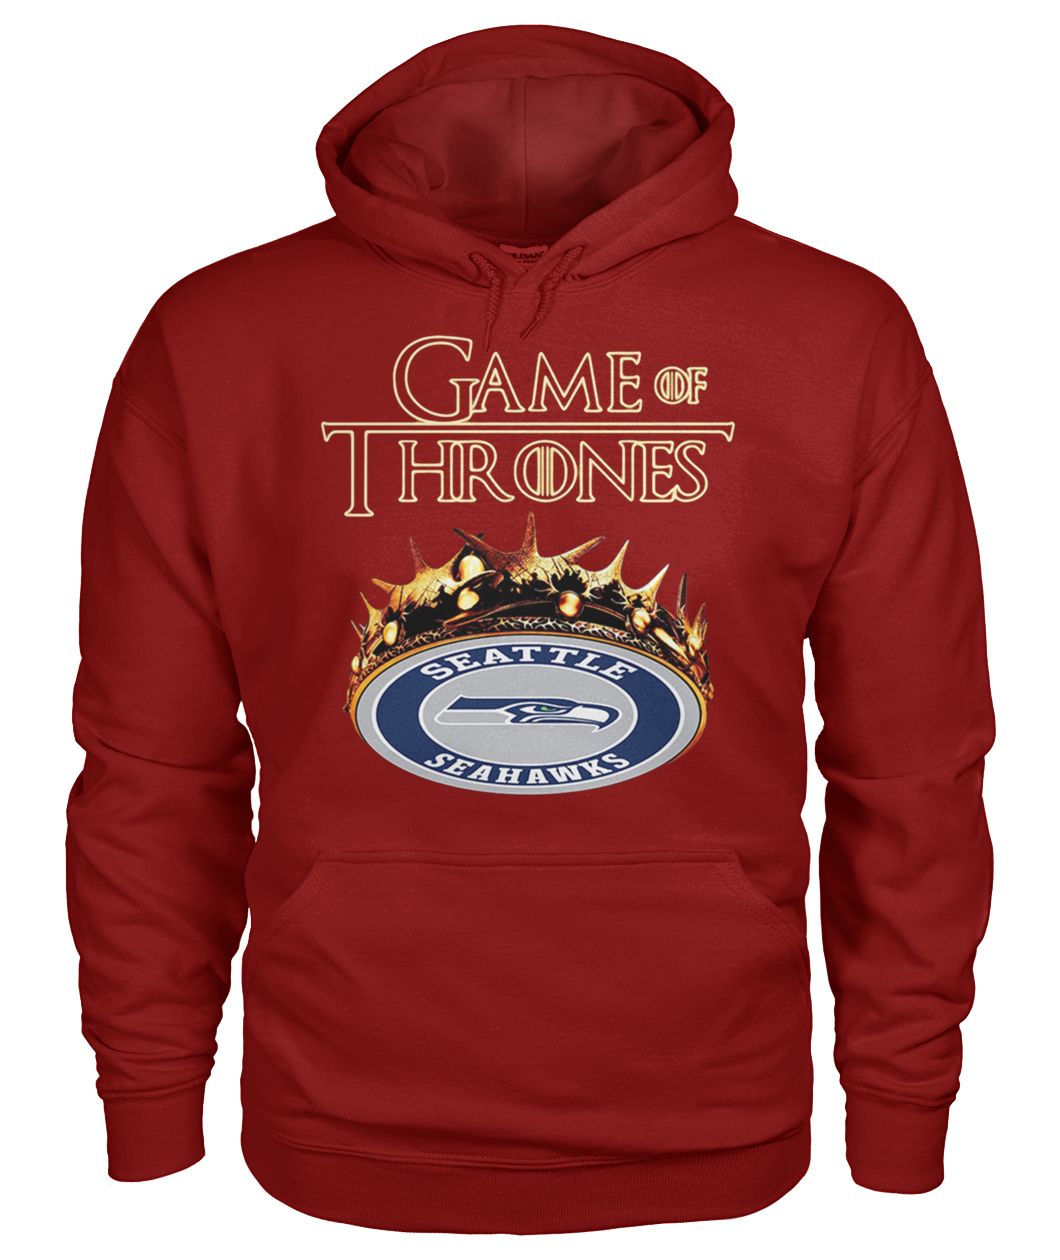 Game of thrones crown seattle seahawks gildan hoodie